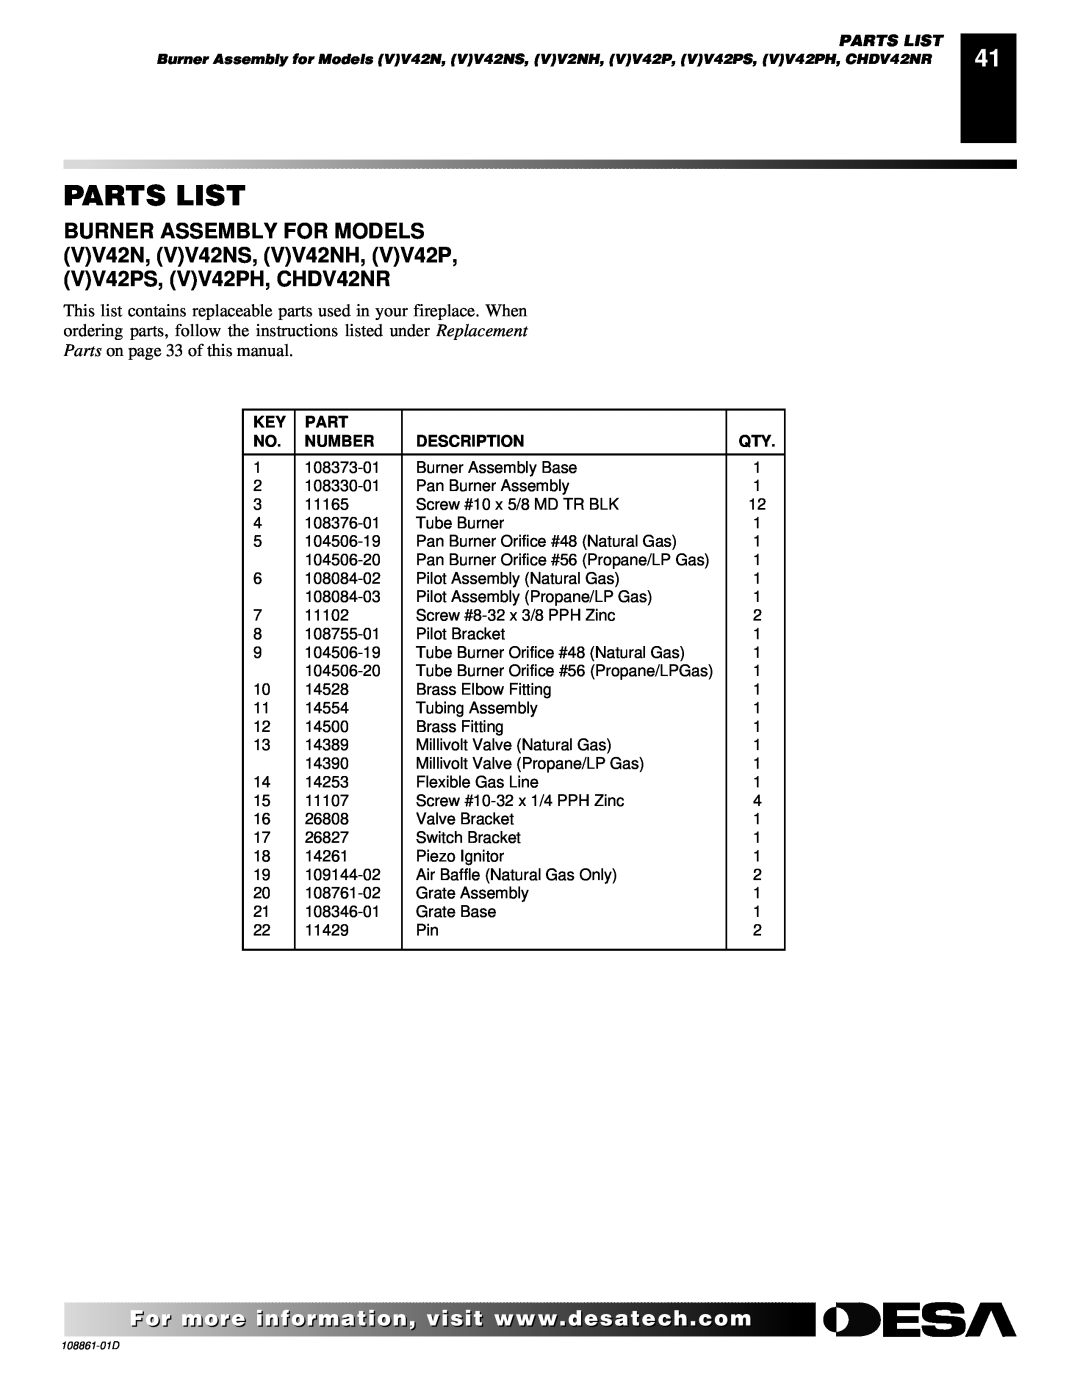 Desa (V)V42N, (V)V42P, (V)V36P, CHDV36NR, CHDV42NR installation manual Parts List, Number, Description 